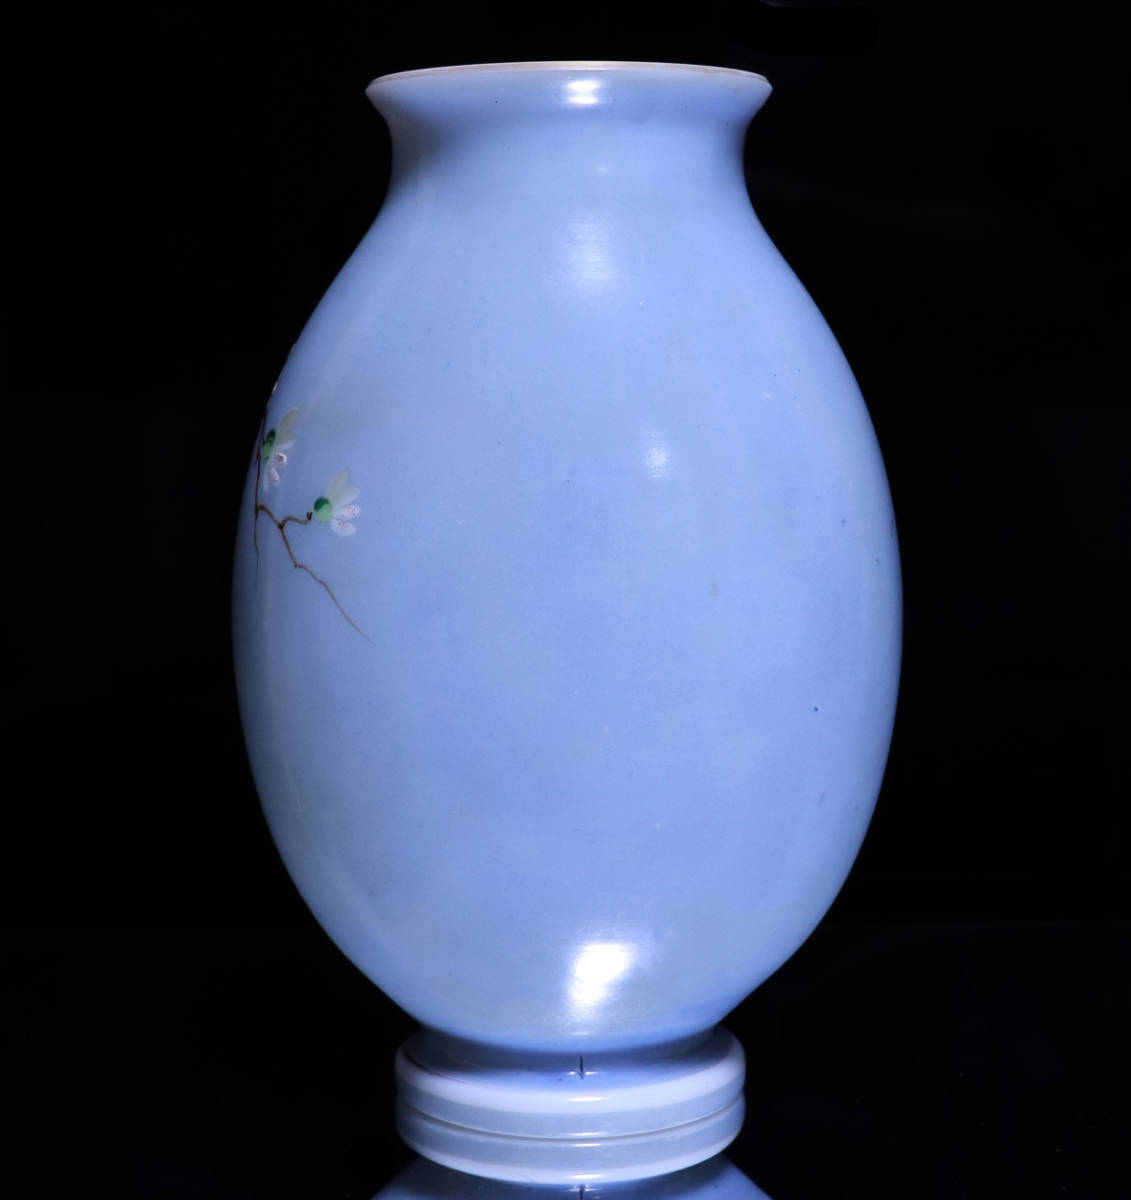 オールド・バカラ (BACCARAT) 日本趣味 レアカラー オパーリンクリスタル製 大型花瓶 ライトブルー 壺 アンティーク ジャポニスム セーブル_画像3